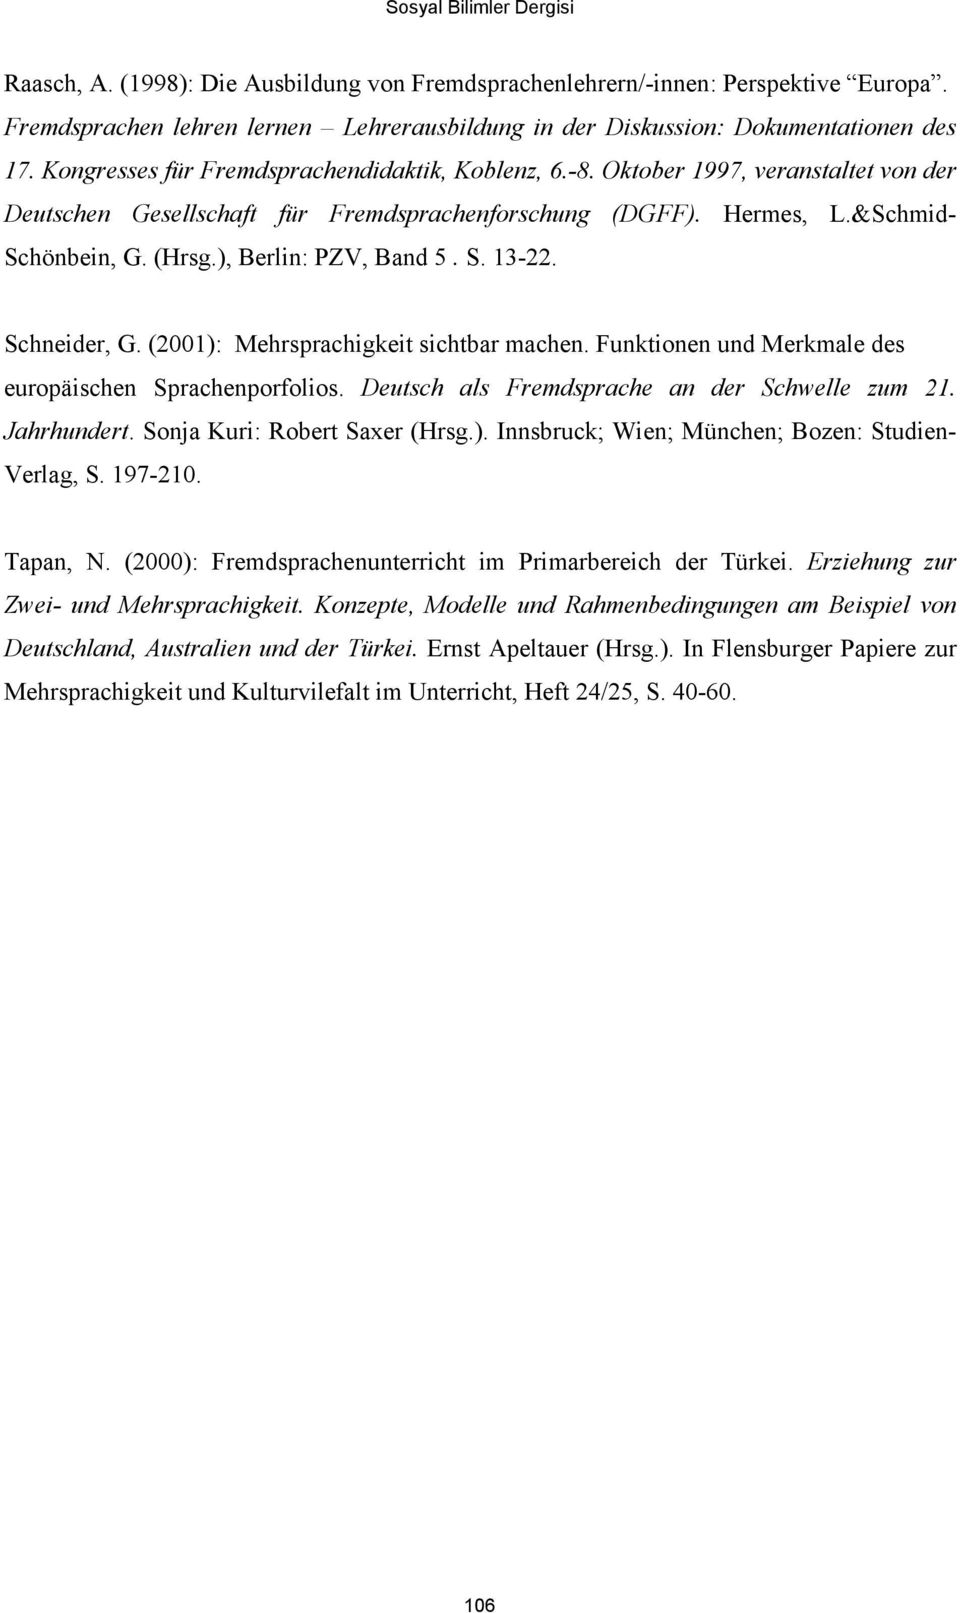 ), Berlin: PZV, Band 5. S. 13-22. Schneider, G. (2001): Mehrsprachigkeit sichtbar machen. Funktionen und Merkmale des europäischen Sprachenporfolios. Deutsch als Fremdsprache an der Schwelle zum 21.